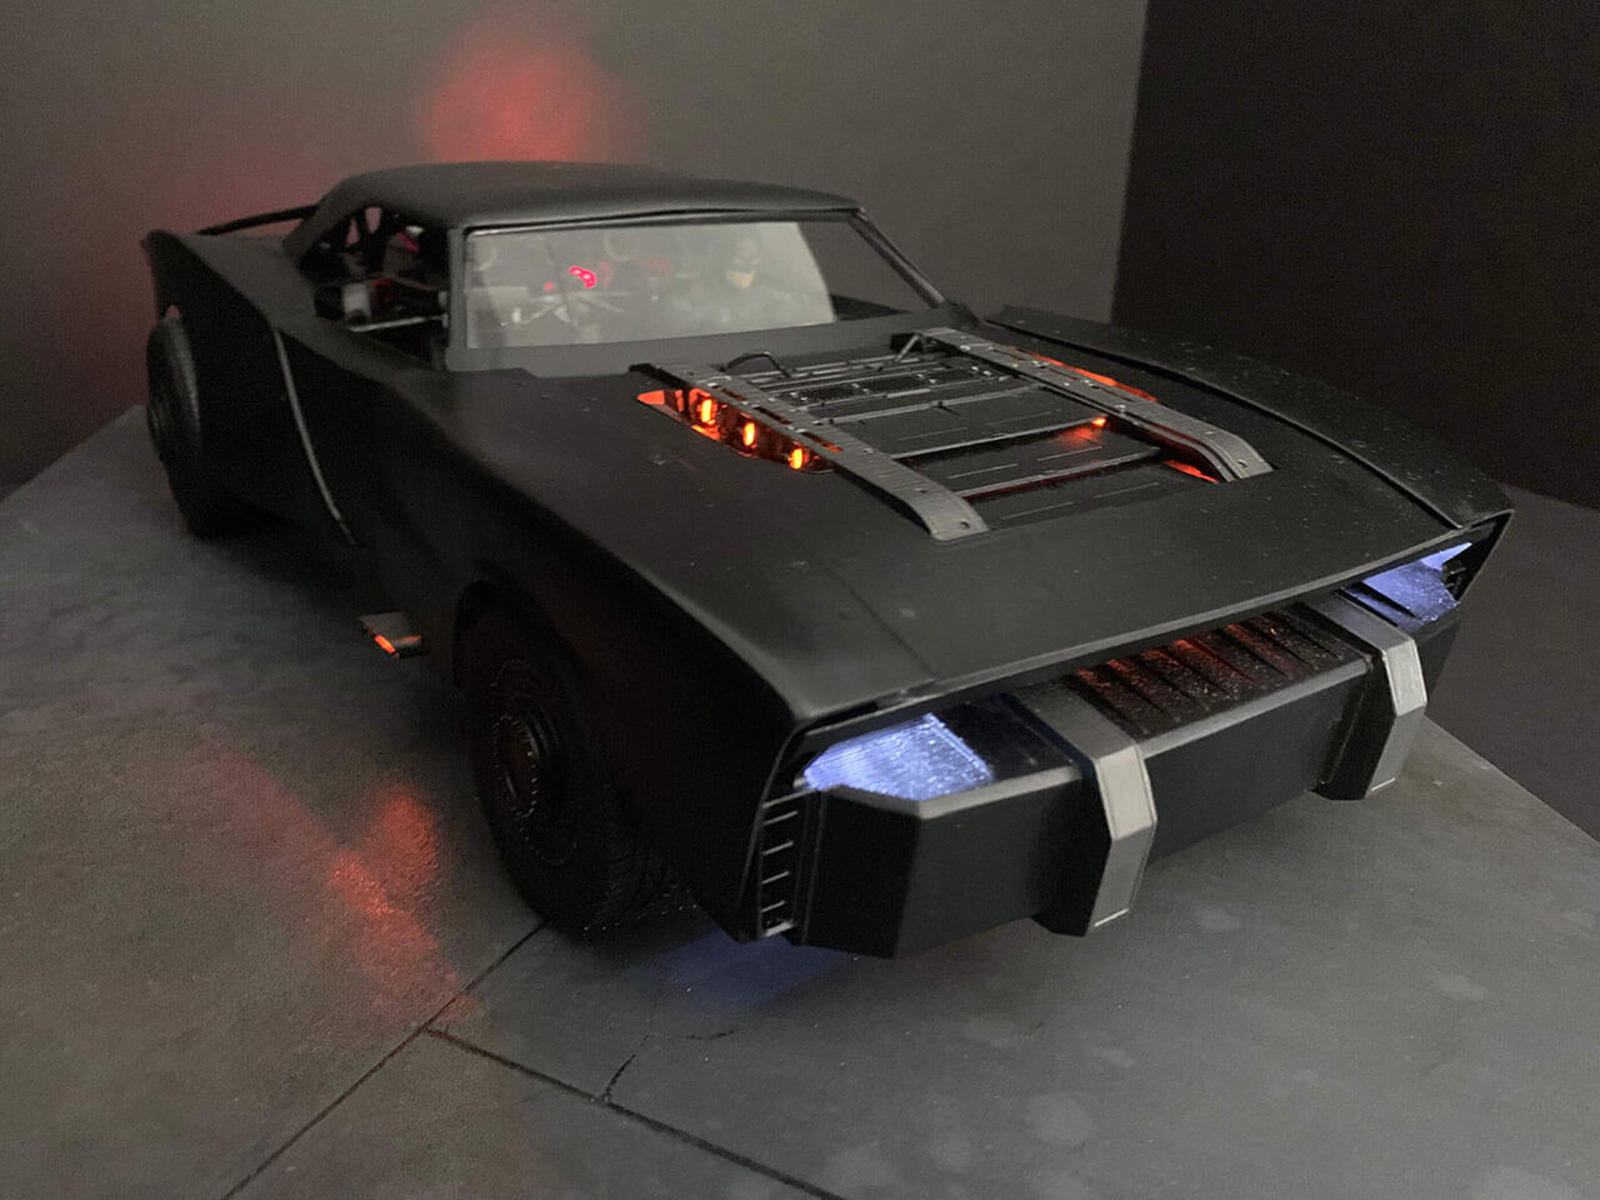 سيارة باتموبيل الجديدة تظهر في إعلان فيلم باتمان القادم 8